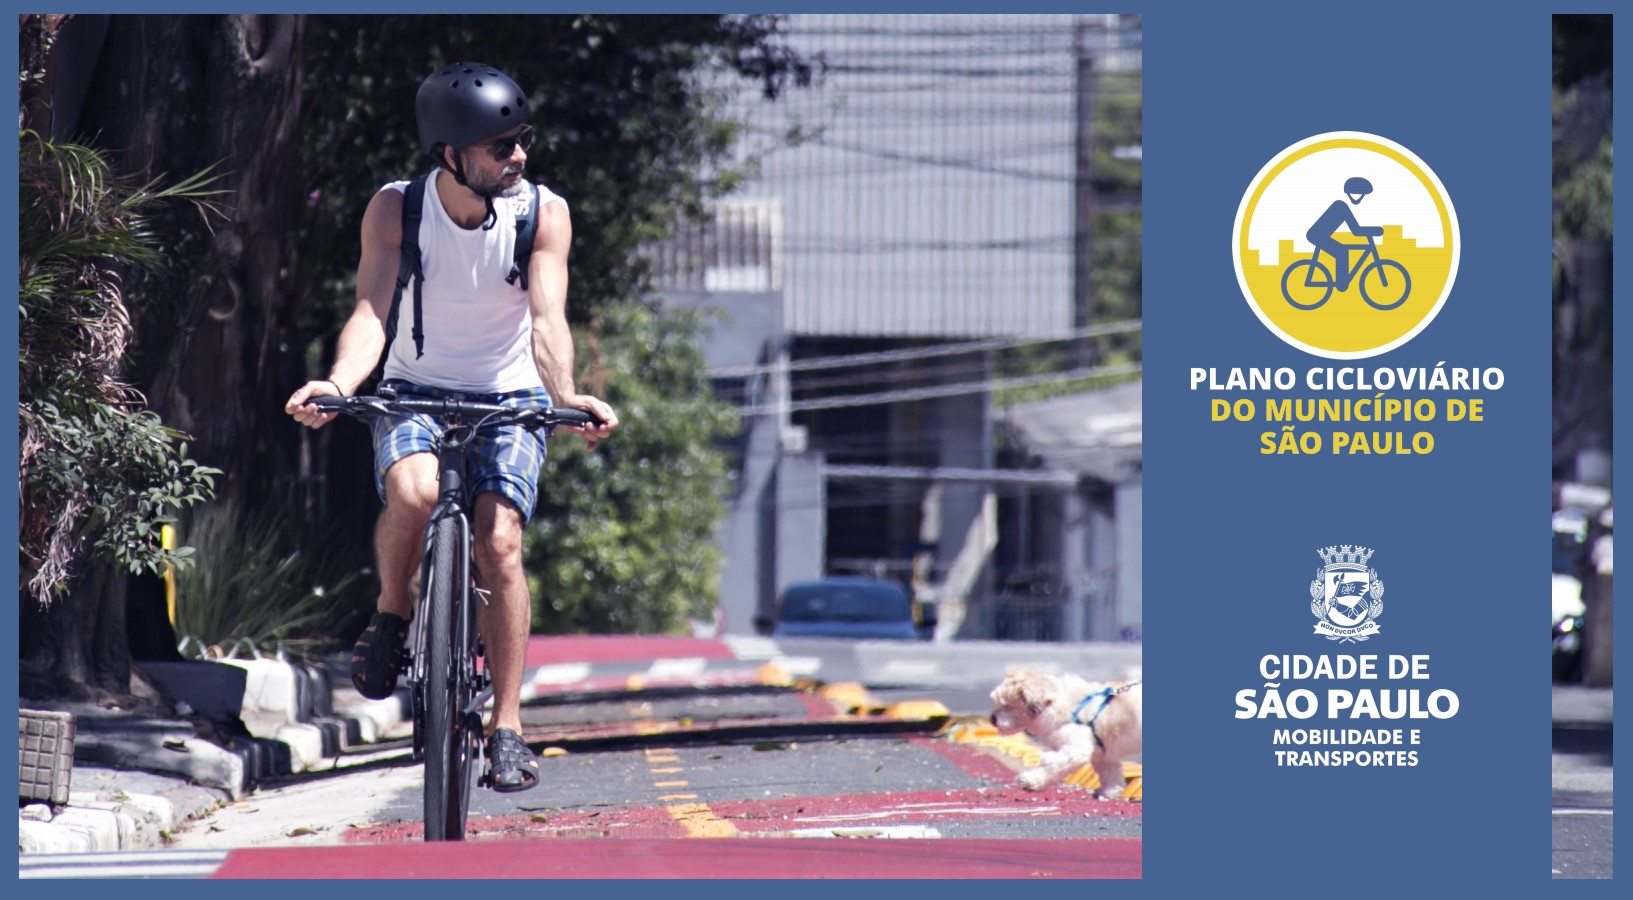 Foto mostra ciclista trafegando pela ciclovia, o logotipo da Prefeitura de São Paulo na cor branca em um fundo azul e o logotipo do plano cicloviário que é um ciclista dentro de um círculo amarelo, com os dizeres "plano cicloviário do município de São Paulo" abaixo desse círculo